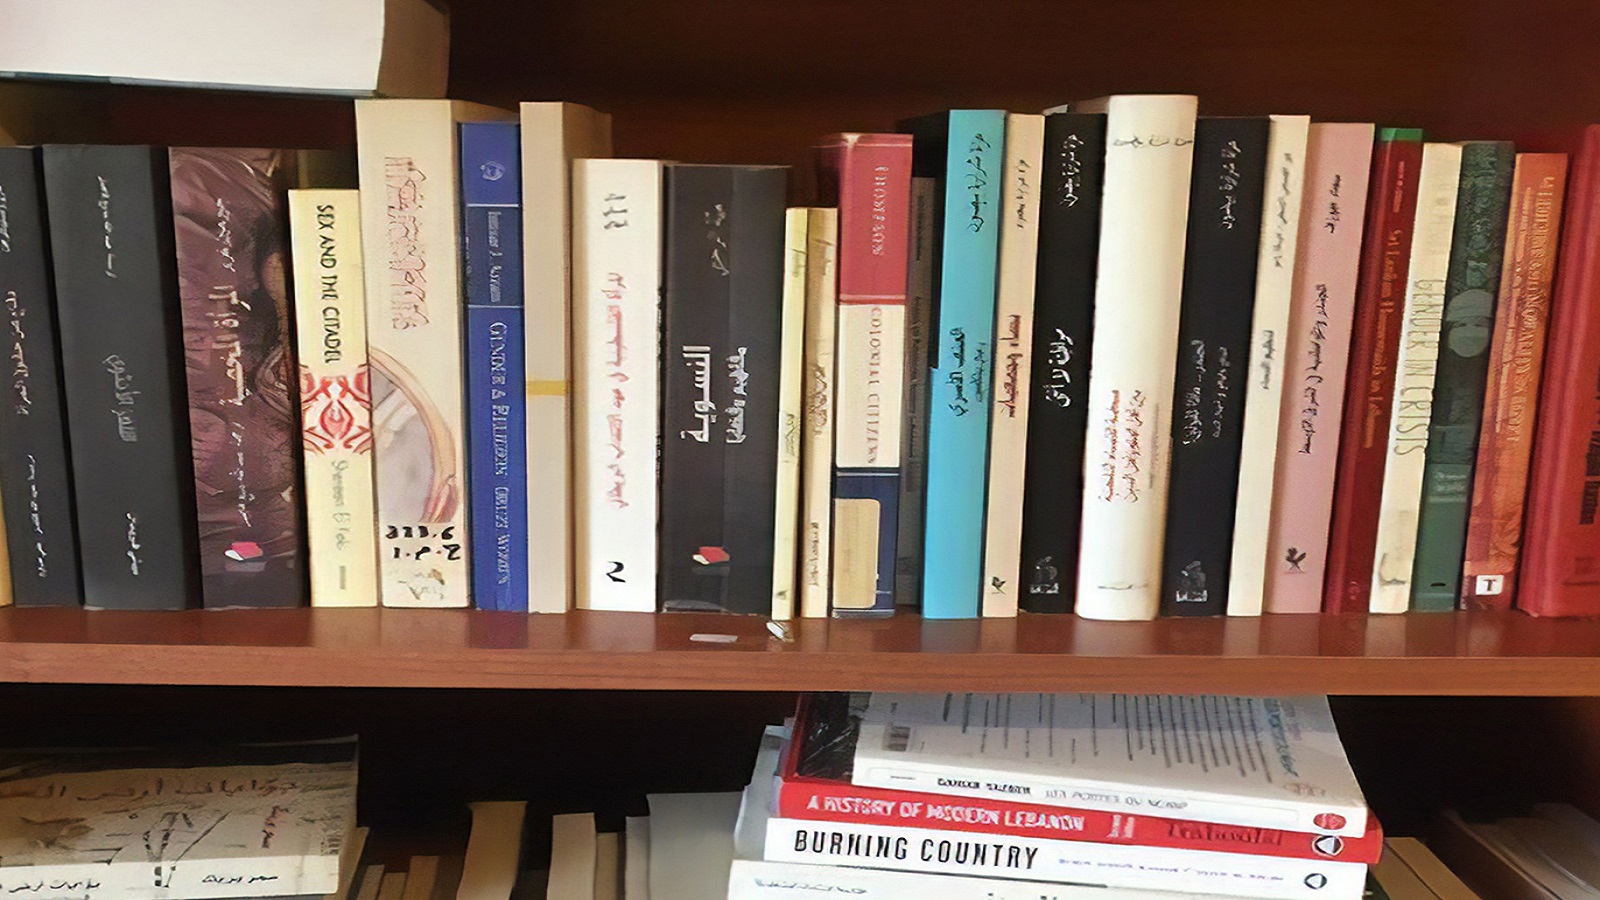 القراءة في زمن الغلاء: اللبنانيون يبيعون كتبهم